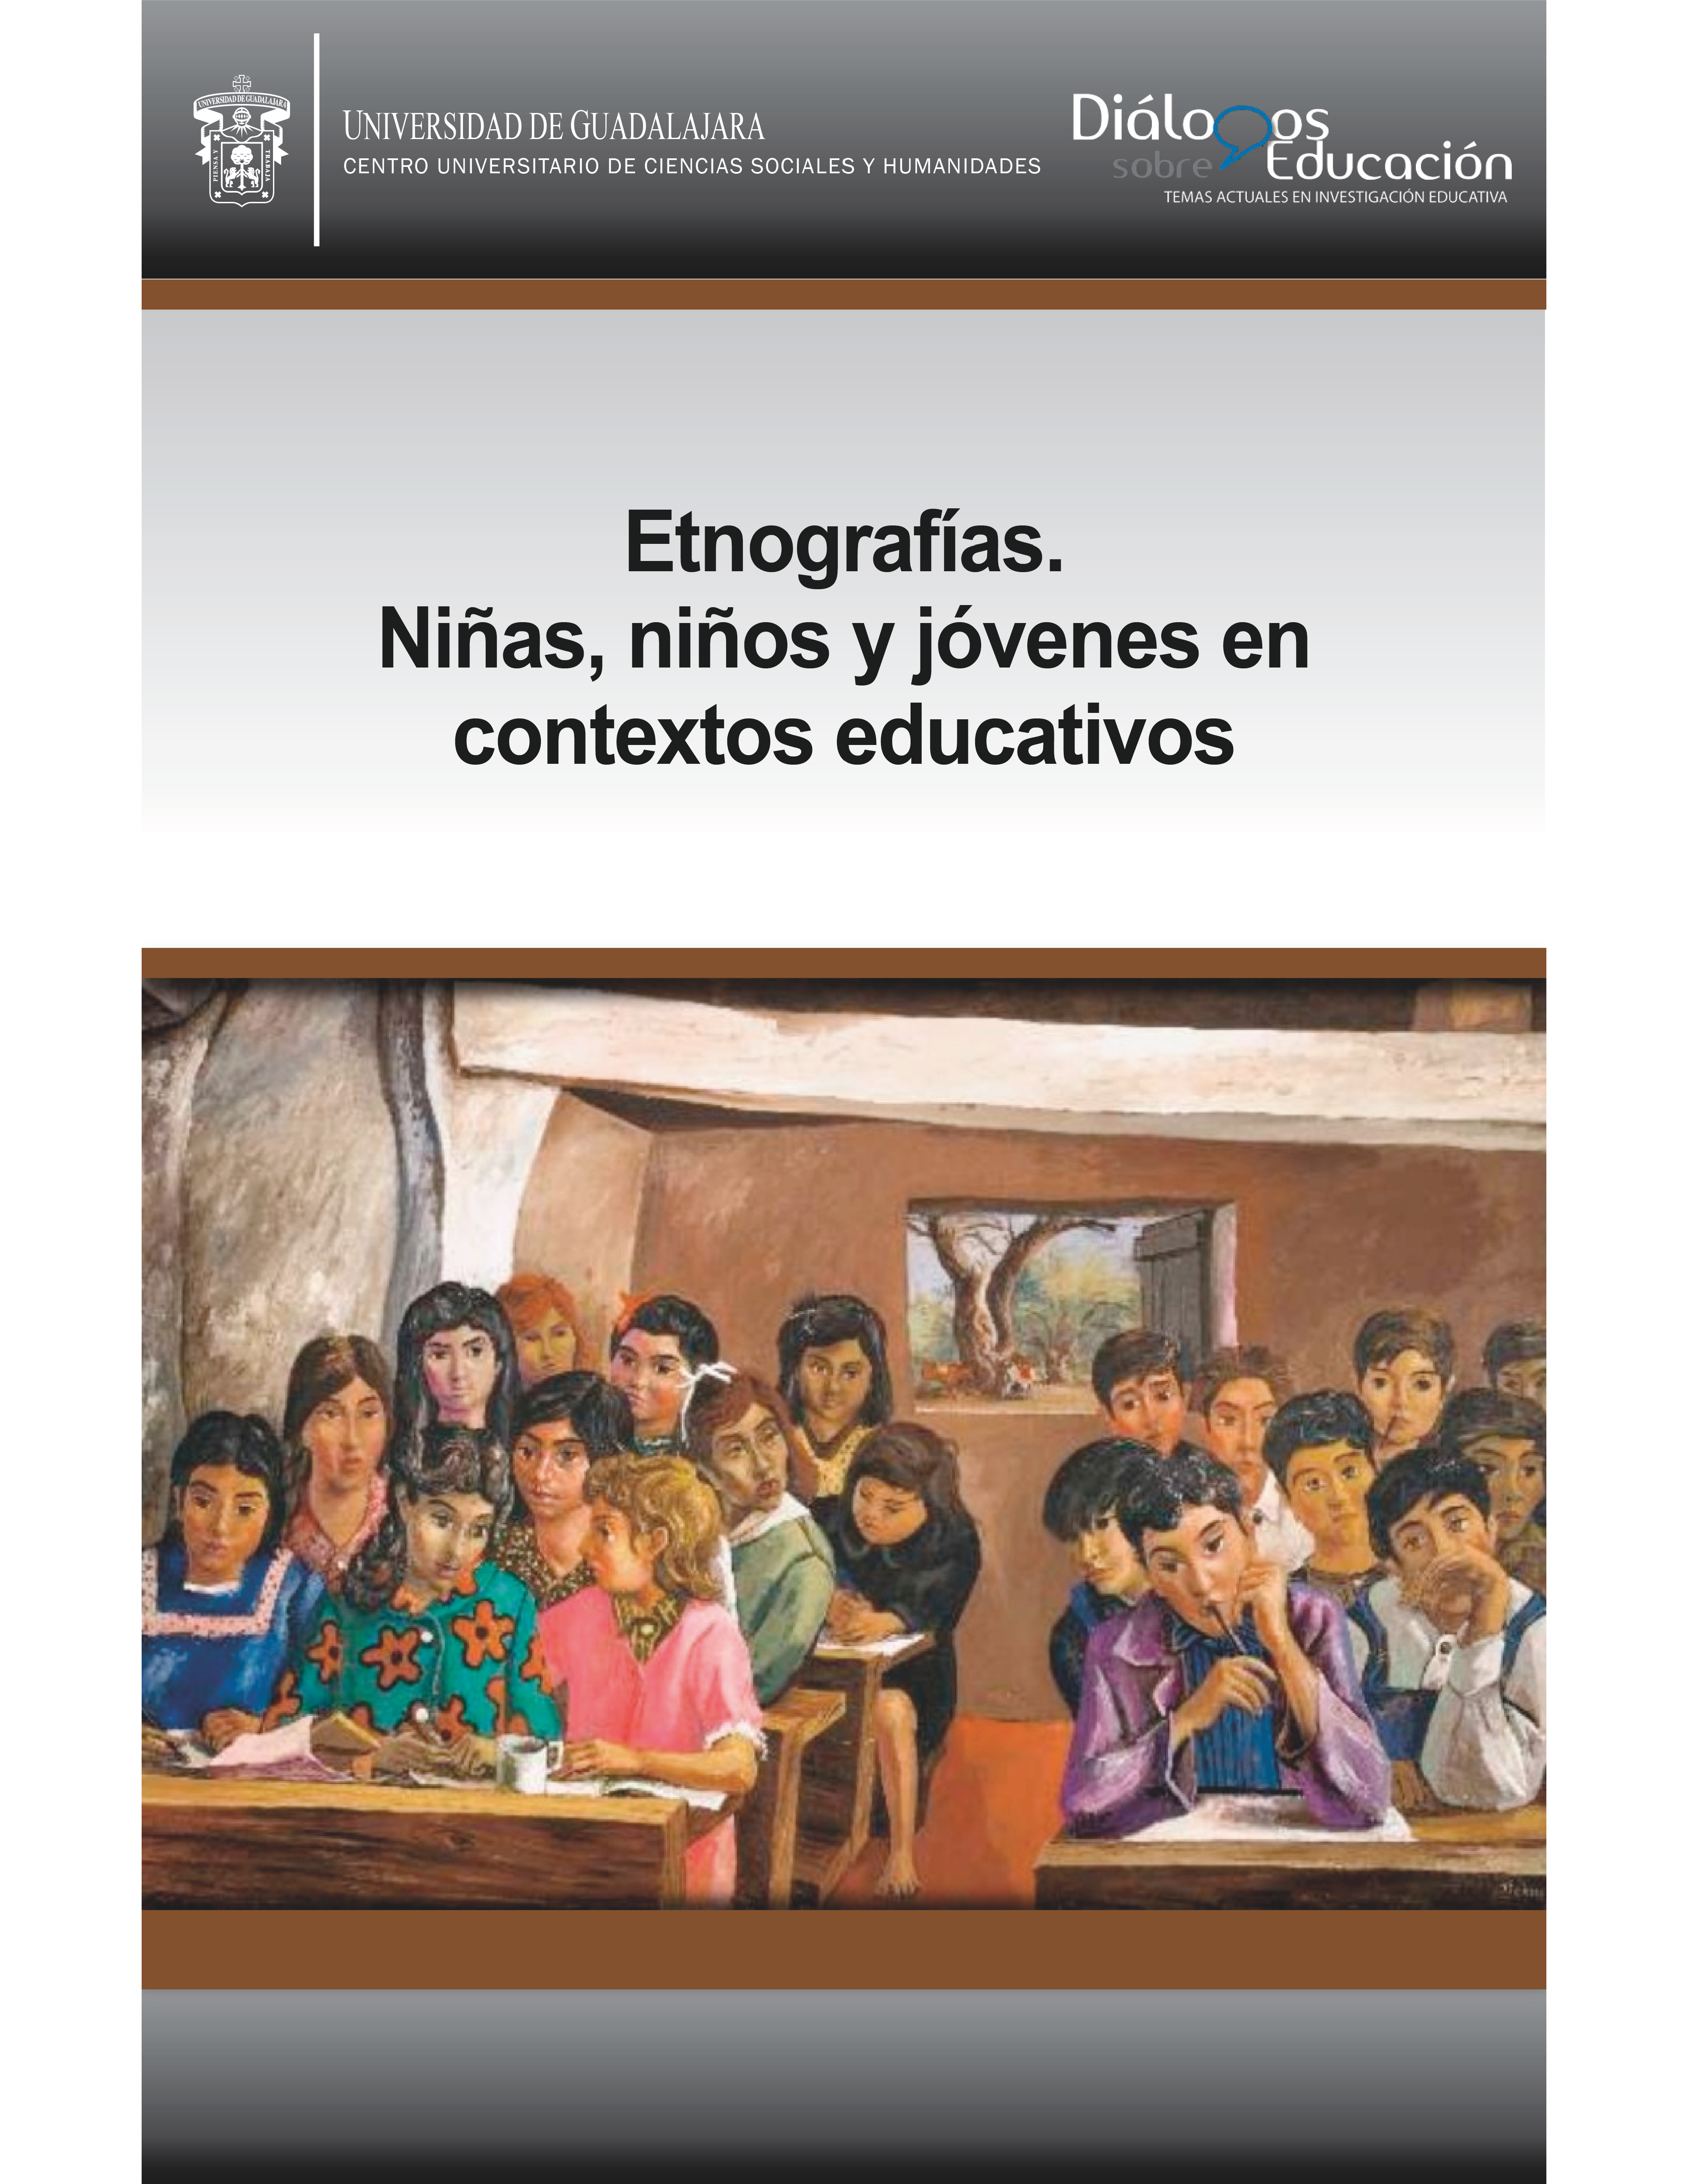 					Afficher No 20 (11): Etnografías. Niñas, niños y jóvenes en contextos educativos. Enero-junio 2020
				